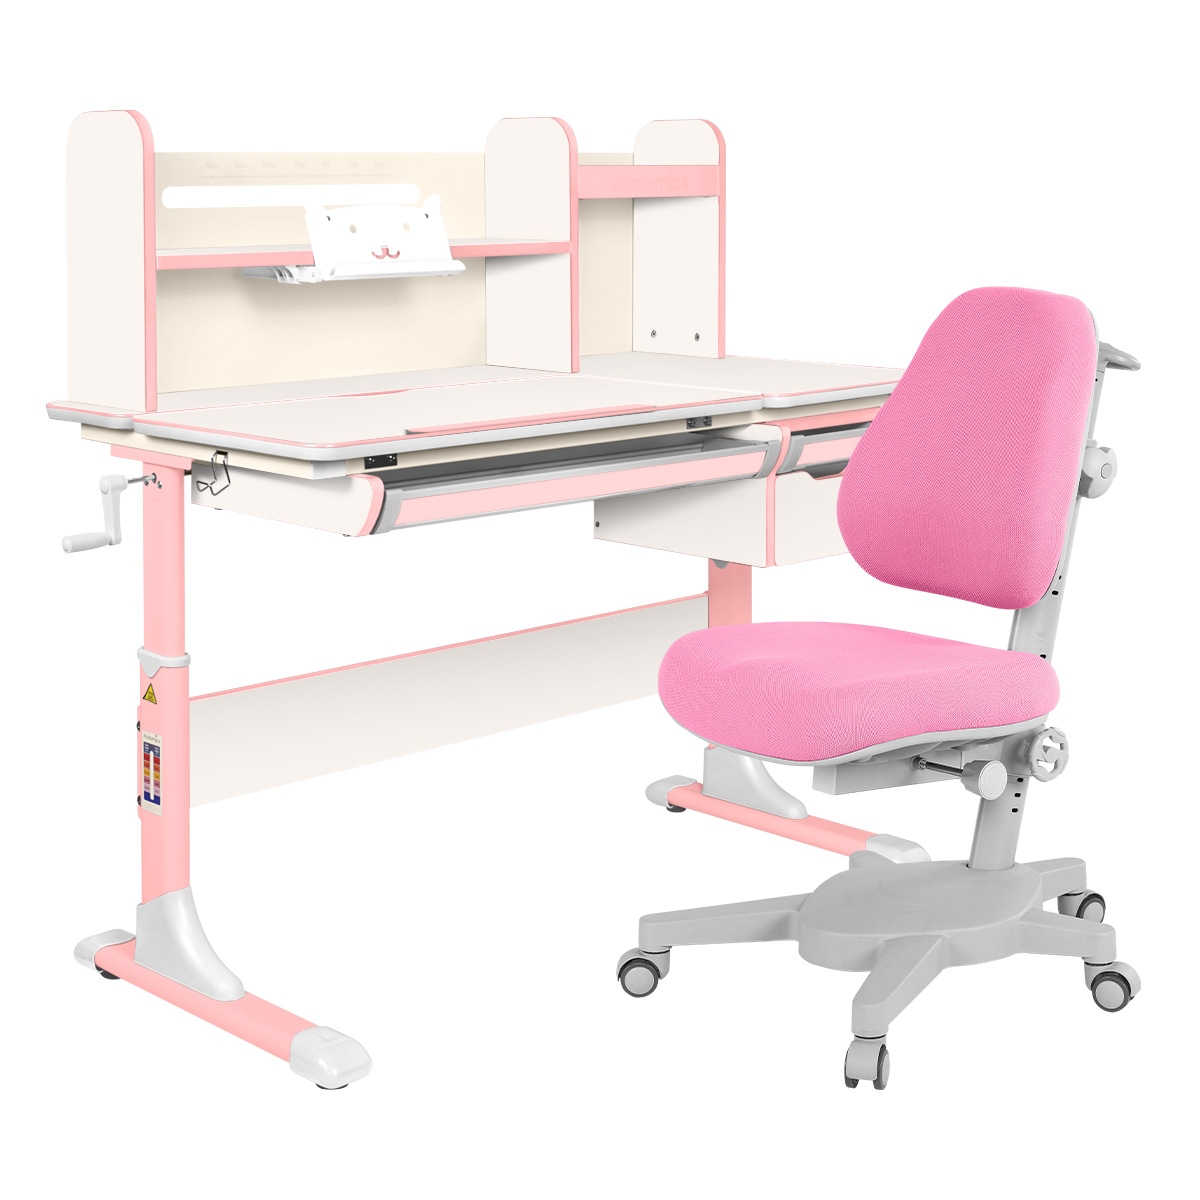 Комплект Anatomica парта Genius белый/розовый с розовым креслом Armata комплект anatomica парта genius белый розовый с розовым креслом figra